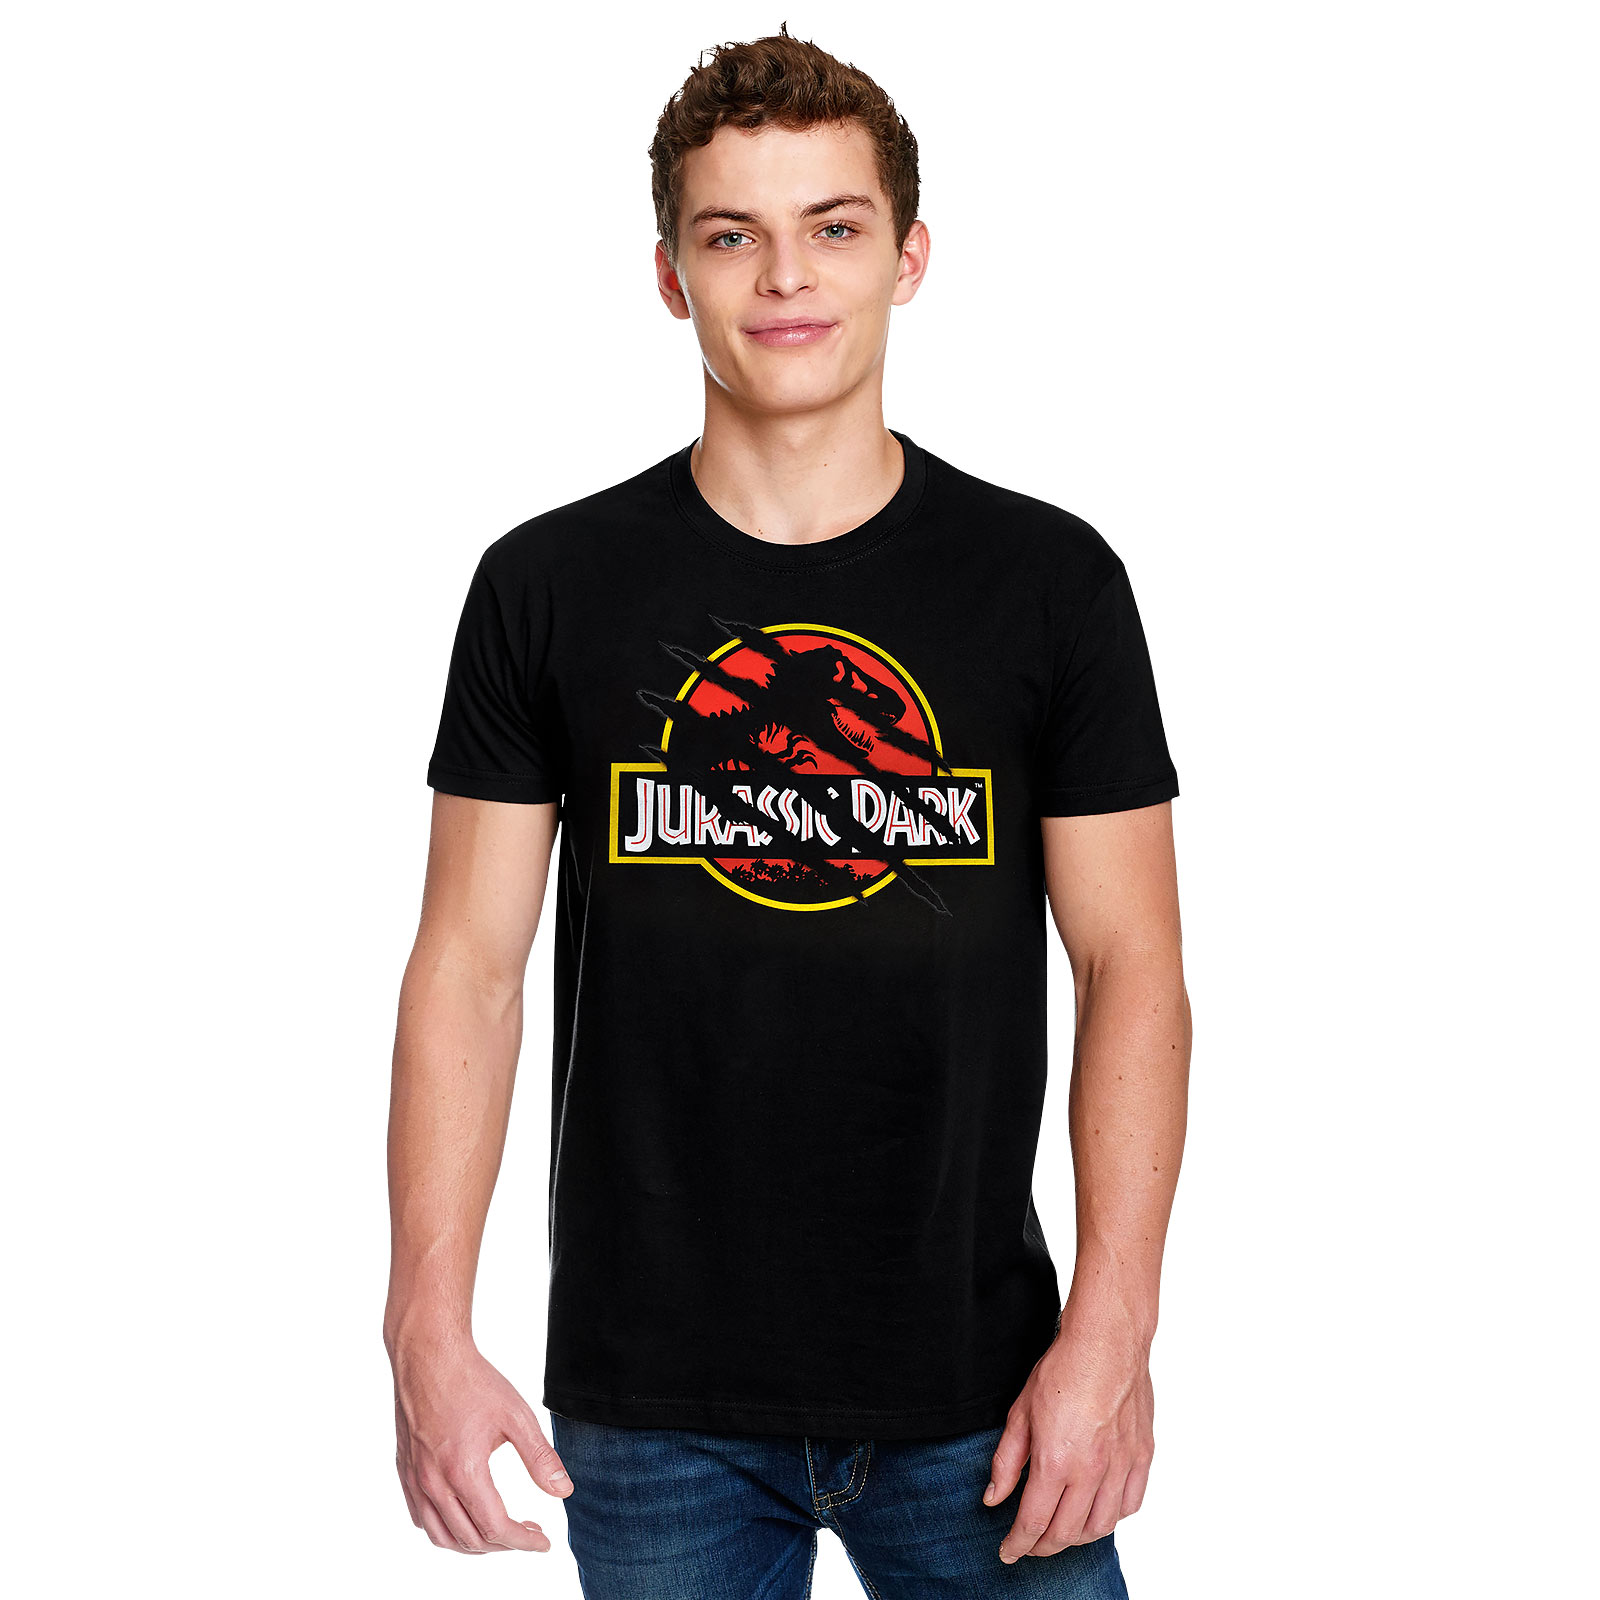 Jurassic Park - T-Shirt noir avec logo du film déchiré